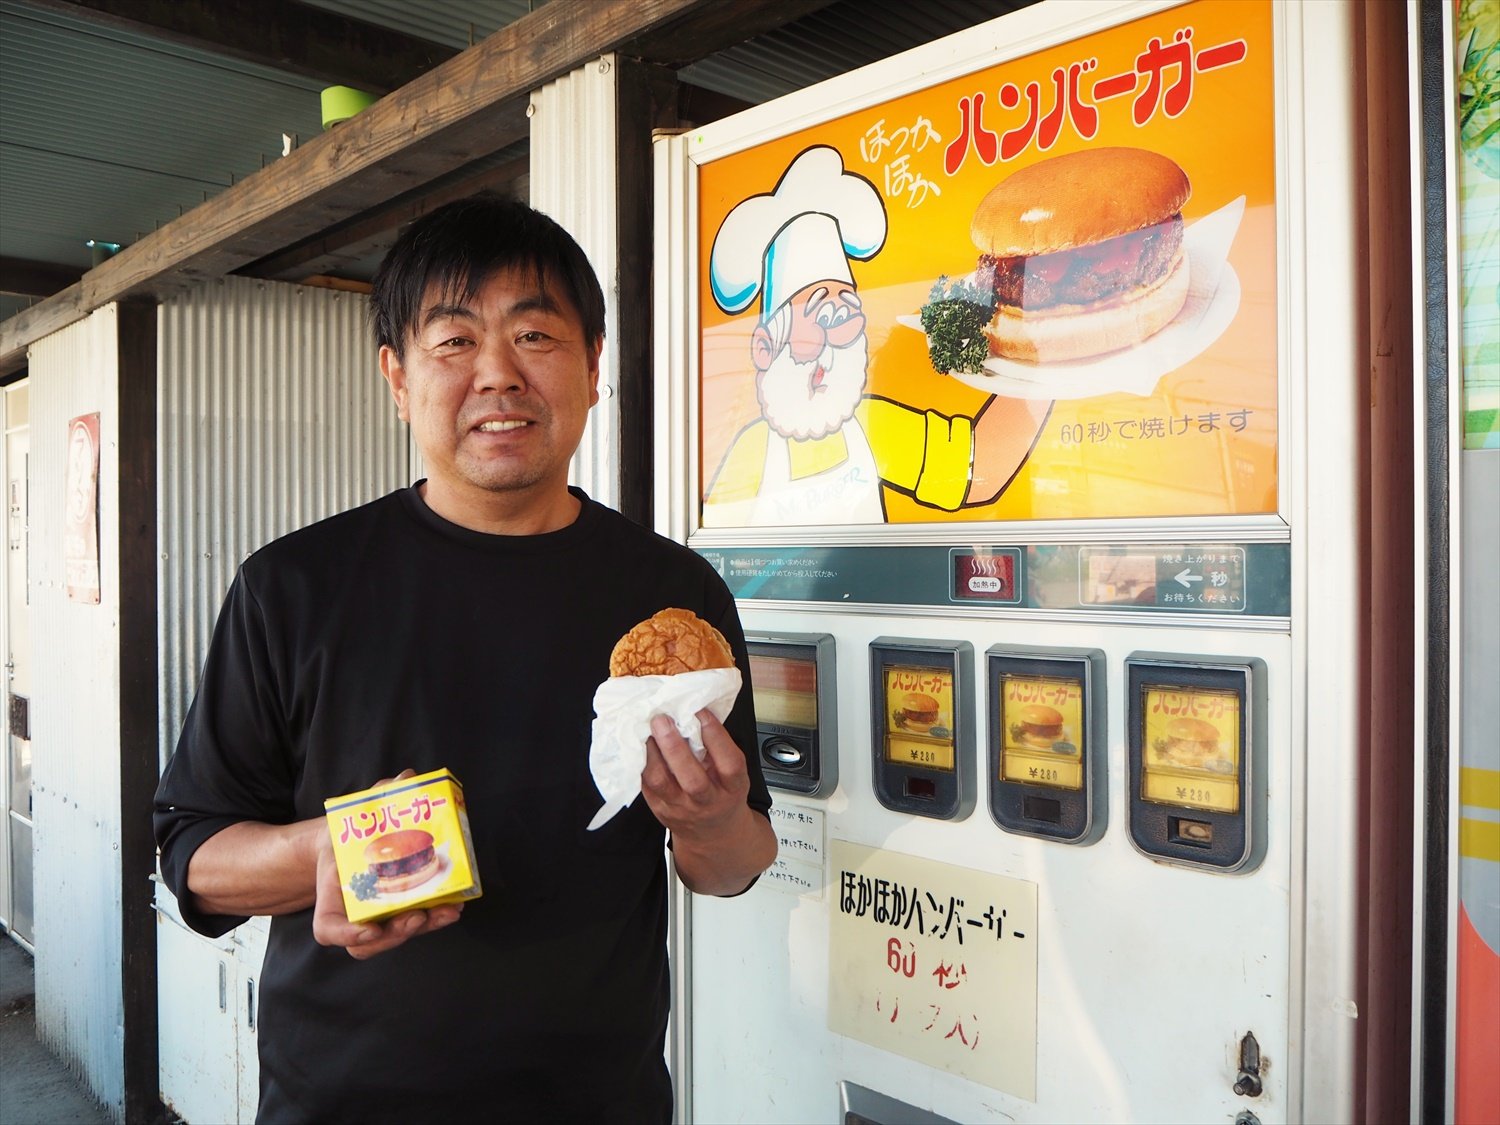 齊藤社長一番のお気に入りはハンバーガーの自販機。自身が子供の頃に親しんだ味なのだそう。